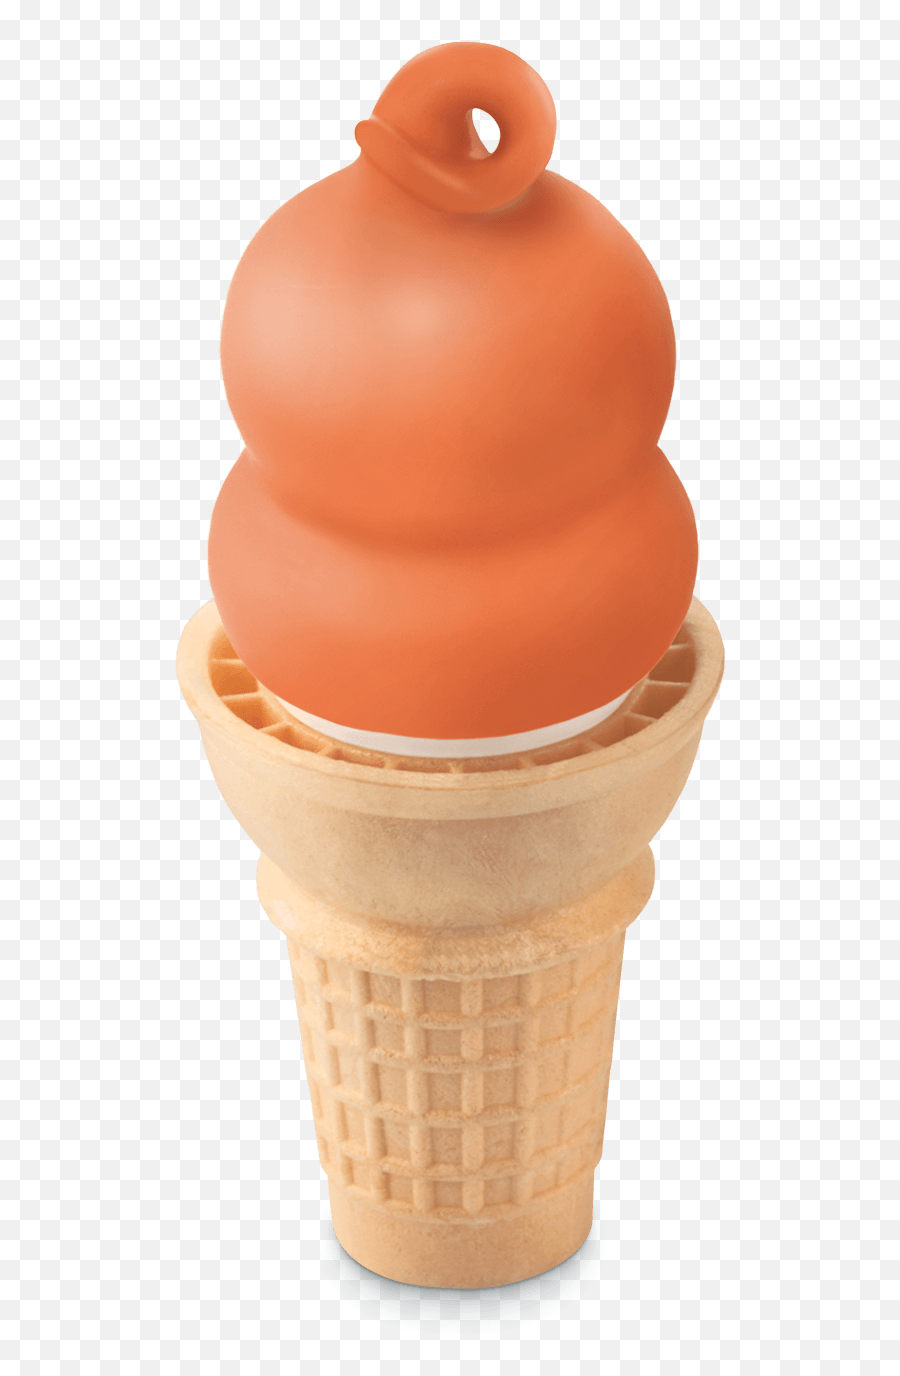 Dairy Queen Menu - Dreamsicle Dq Emoji,Swirl Ice Cream Cone Emoji